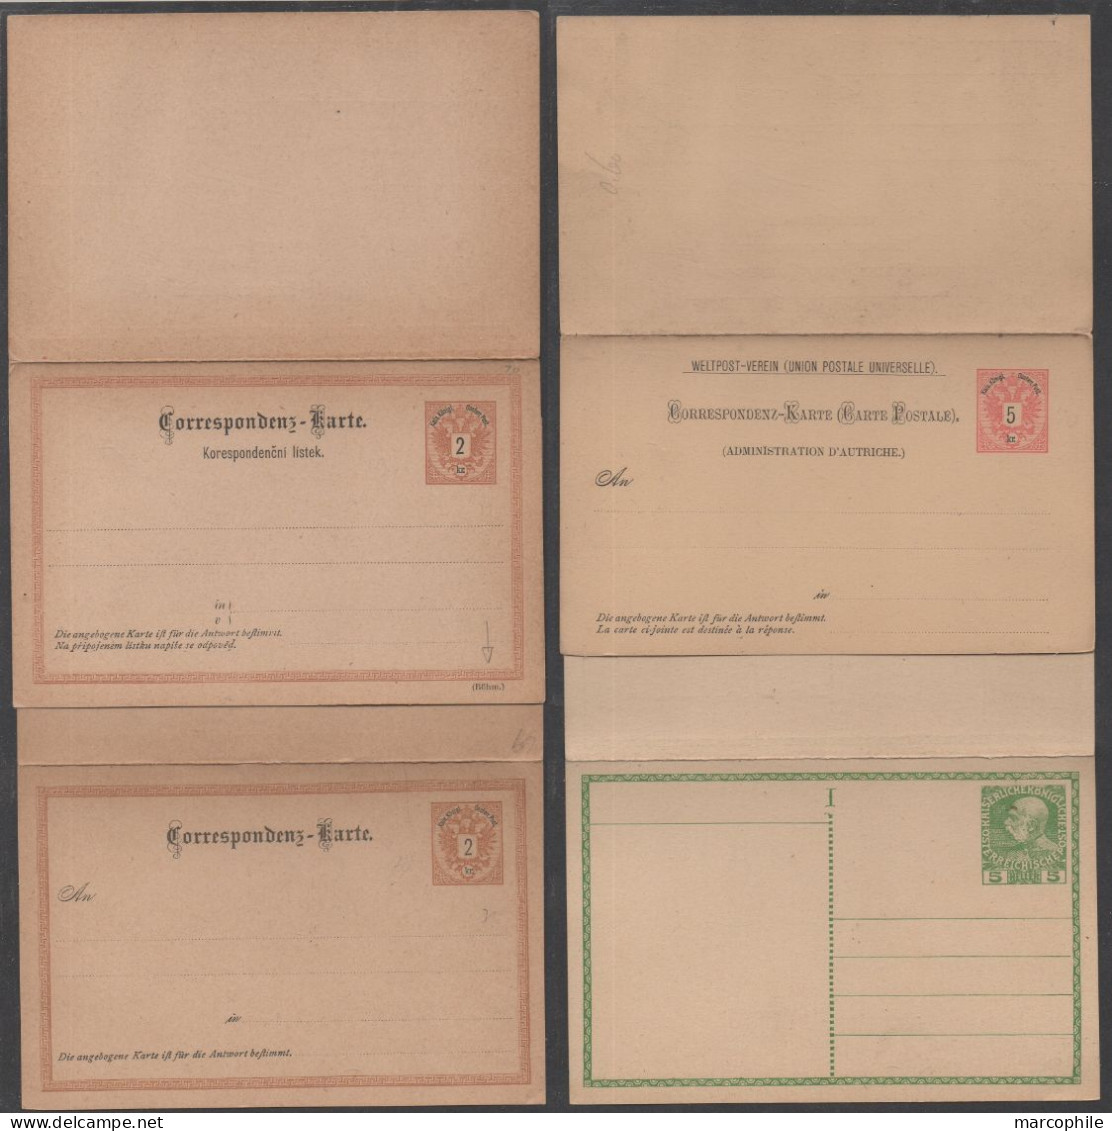 AUTRICHE - ÖSTERREICH / 10 ENTIERS POSTAUX DOUBLES - REPONSE PAYEE / 2 IMAGES (ref 8143) - Cartes Postales